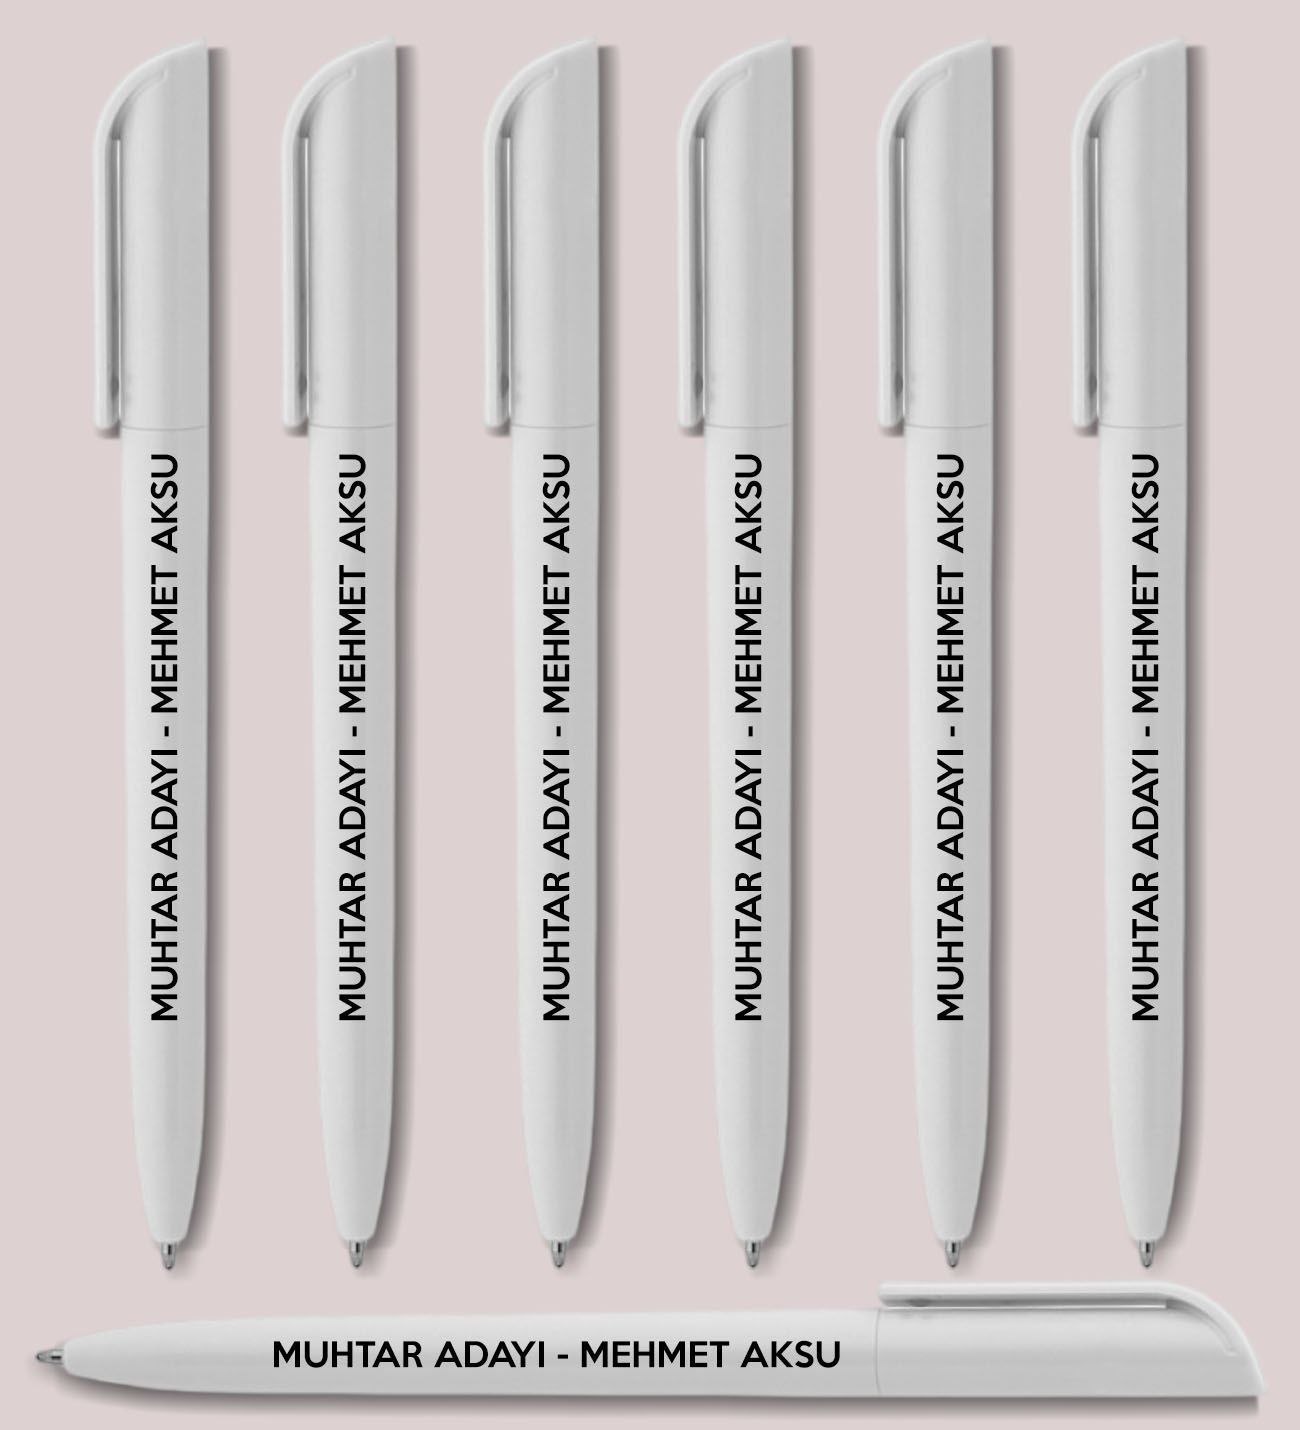 Muhtar Adaylarına Özel Promosyon Beyaz Plastik Tükenmez Kalem, Seçim Promosyon Ürünleri (1000 Adet)